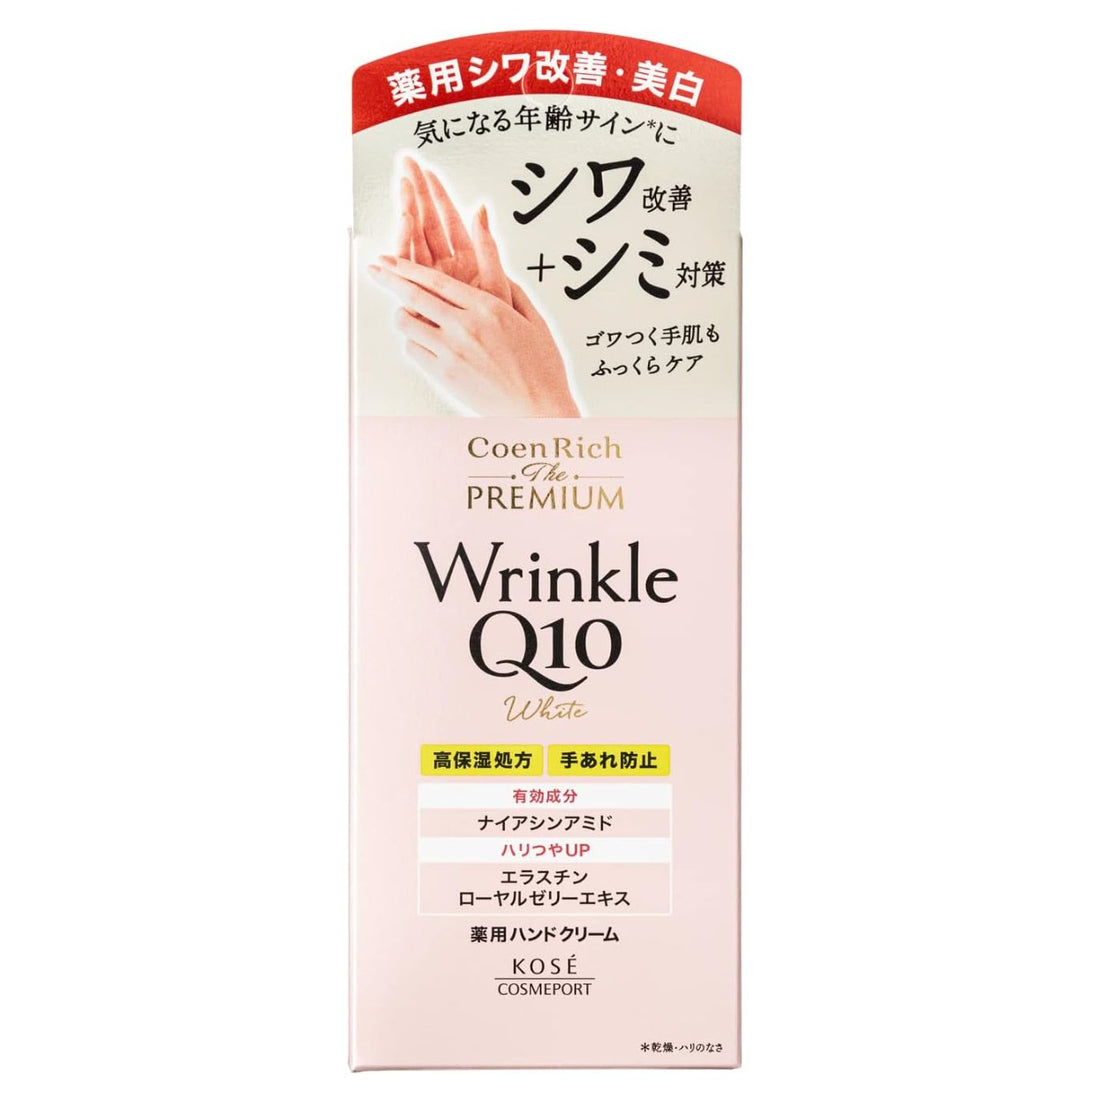 Kose Cosmeport Coen Rich The Premium Wrinkle White Q10 Hand Cream - 60g - NihonMura